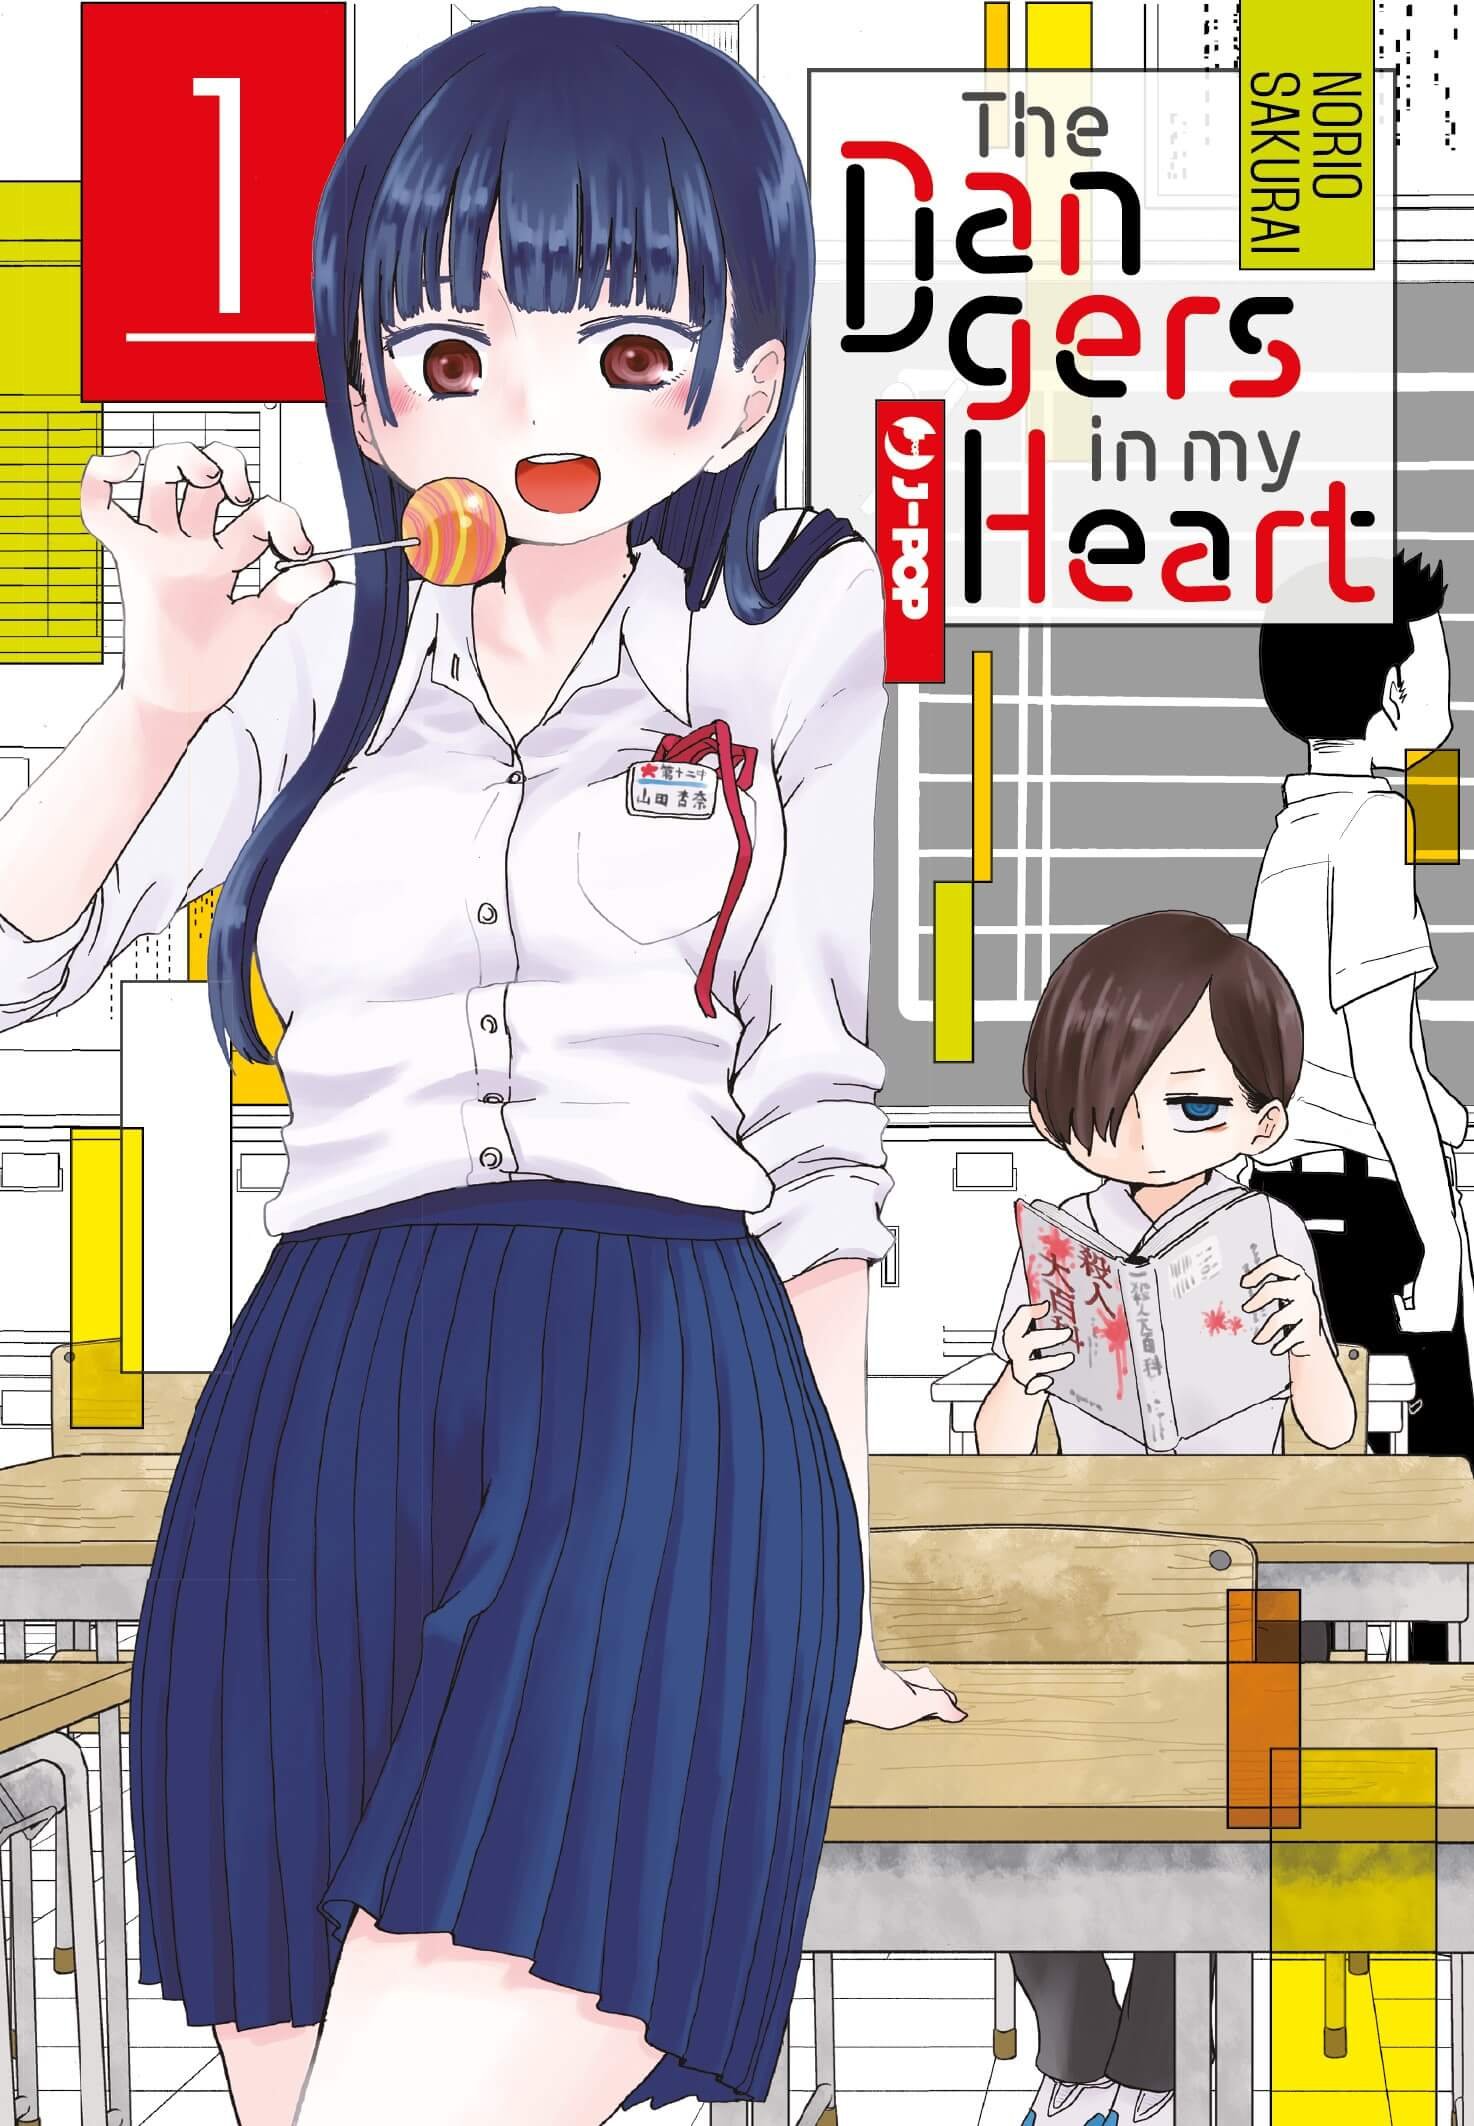 Les dangers dans mon cœur 1, parmi les mangas J-POP sort le 8 novembre 2023.